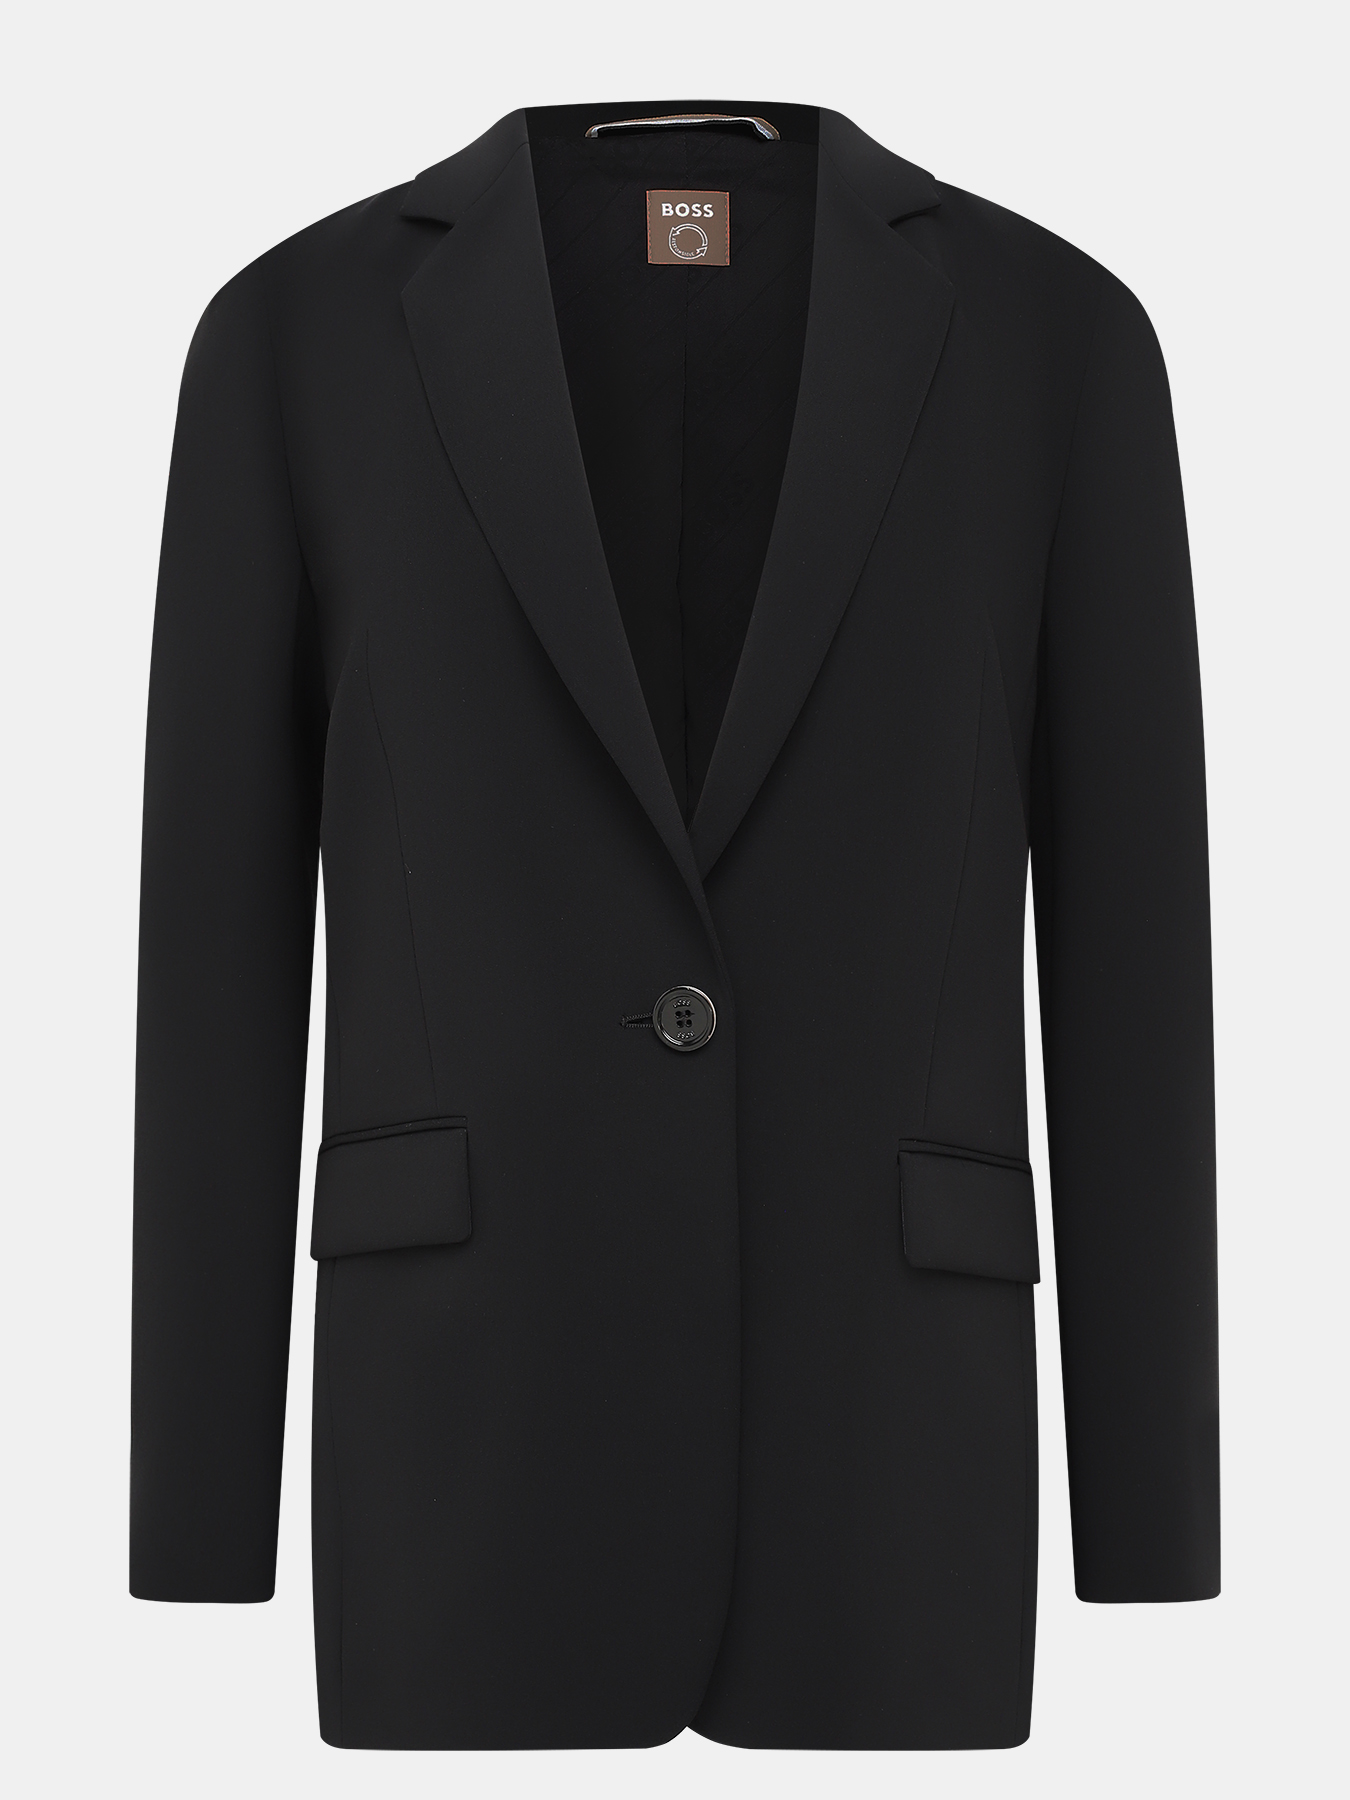 Пиджак Jocalua BOSS 420540-022, цвет черный, размер 48